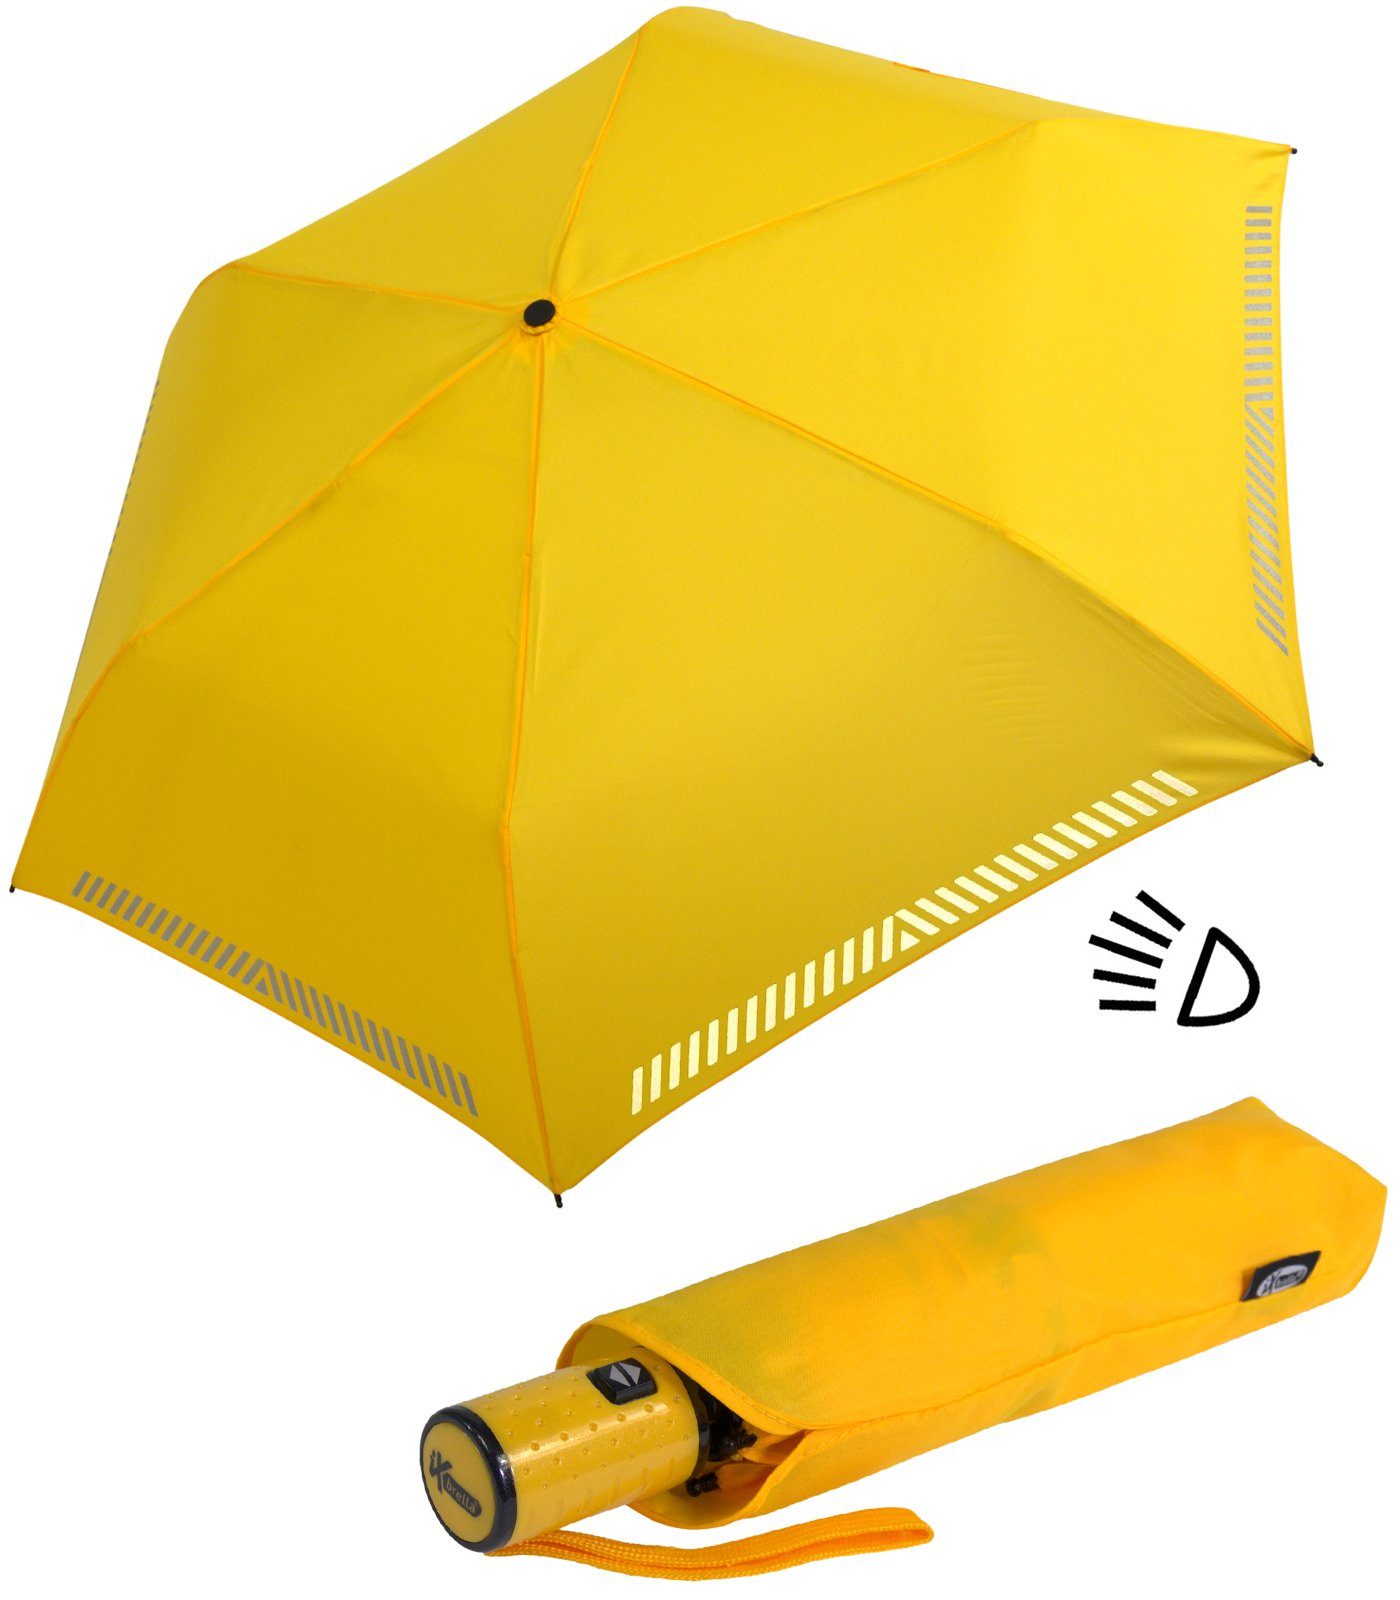 iX-brella Taschenregenschirm Kinderschirm mit durch reflektierend, - Reflex-Streifen Auf-Zu-Automatik, gelb Sicherheit